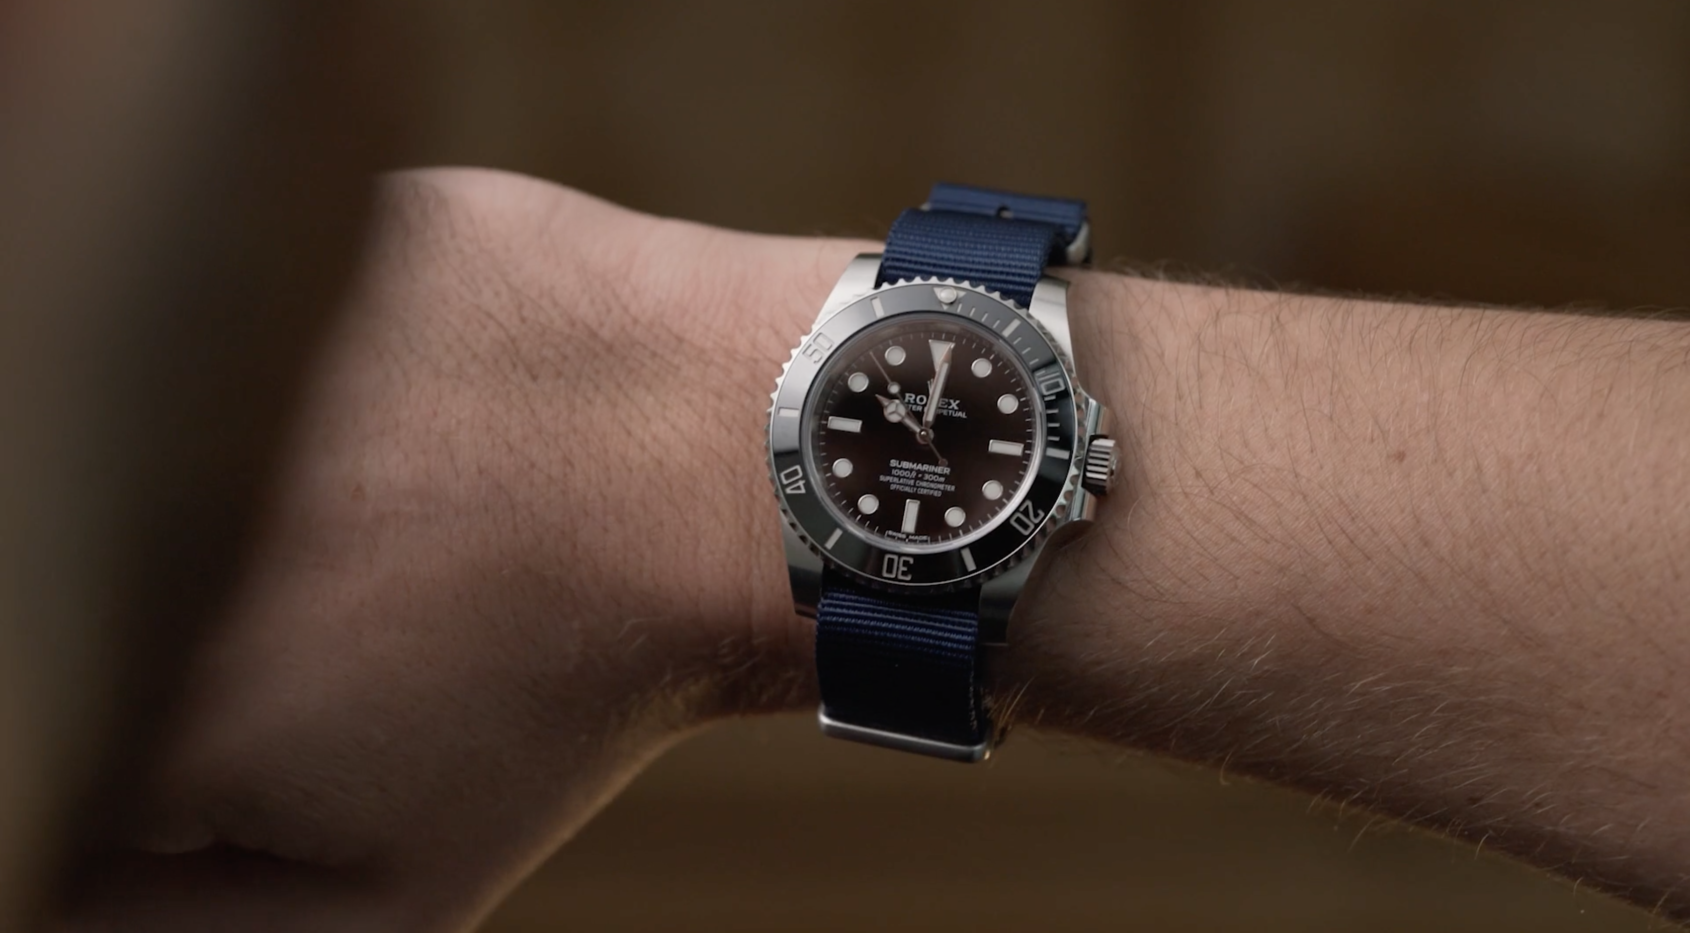 Rolex Submariner watch